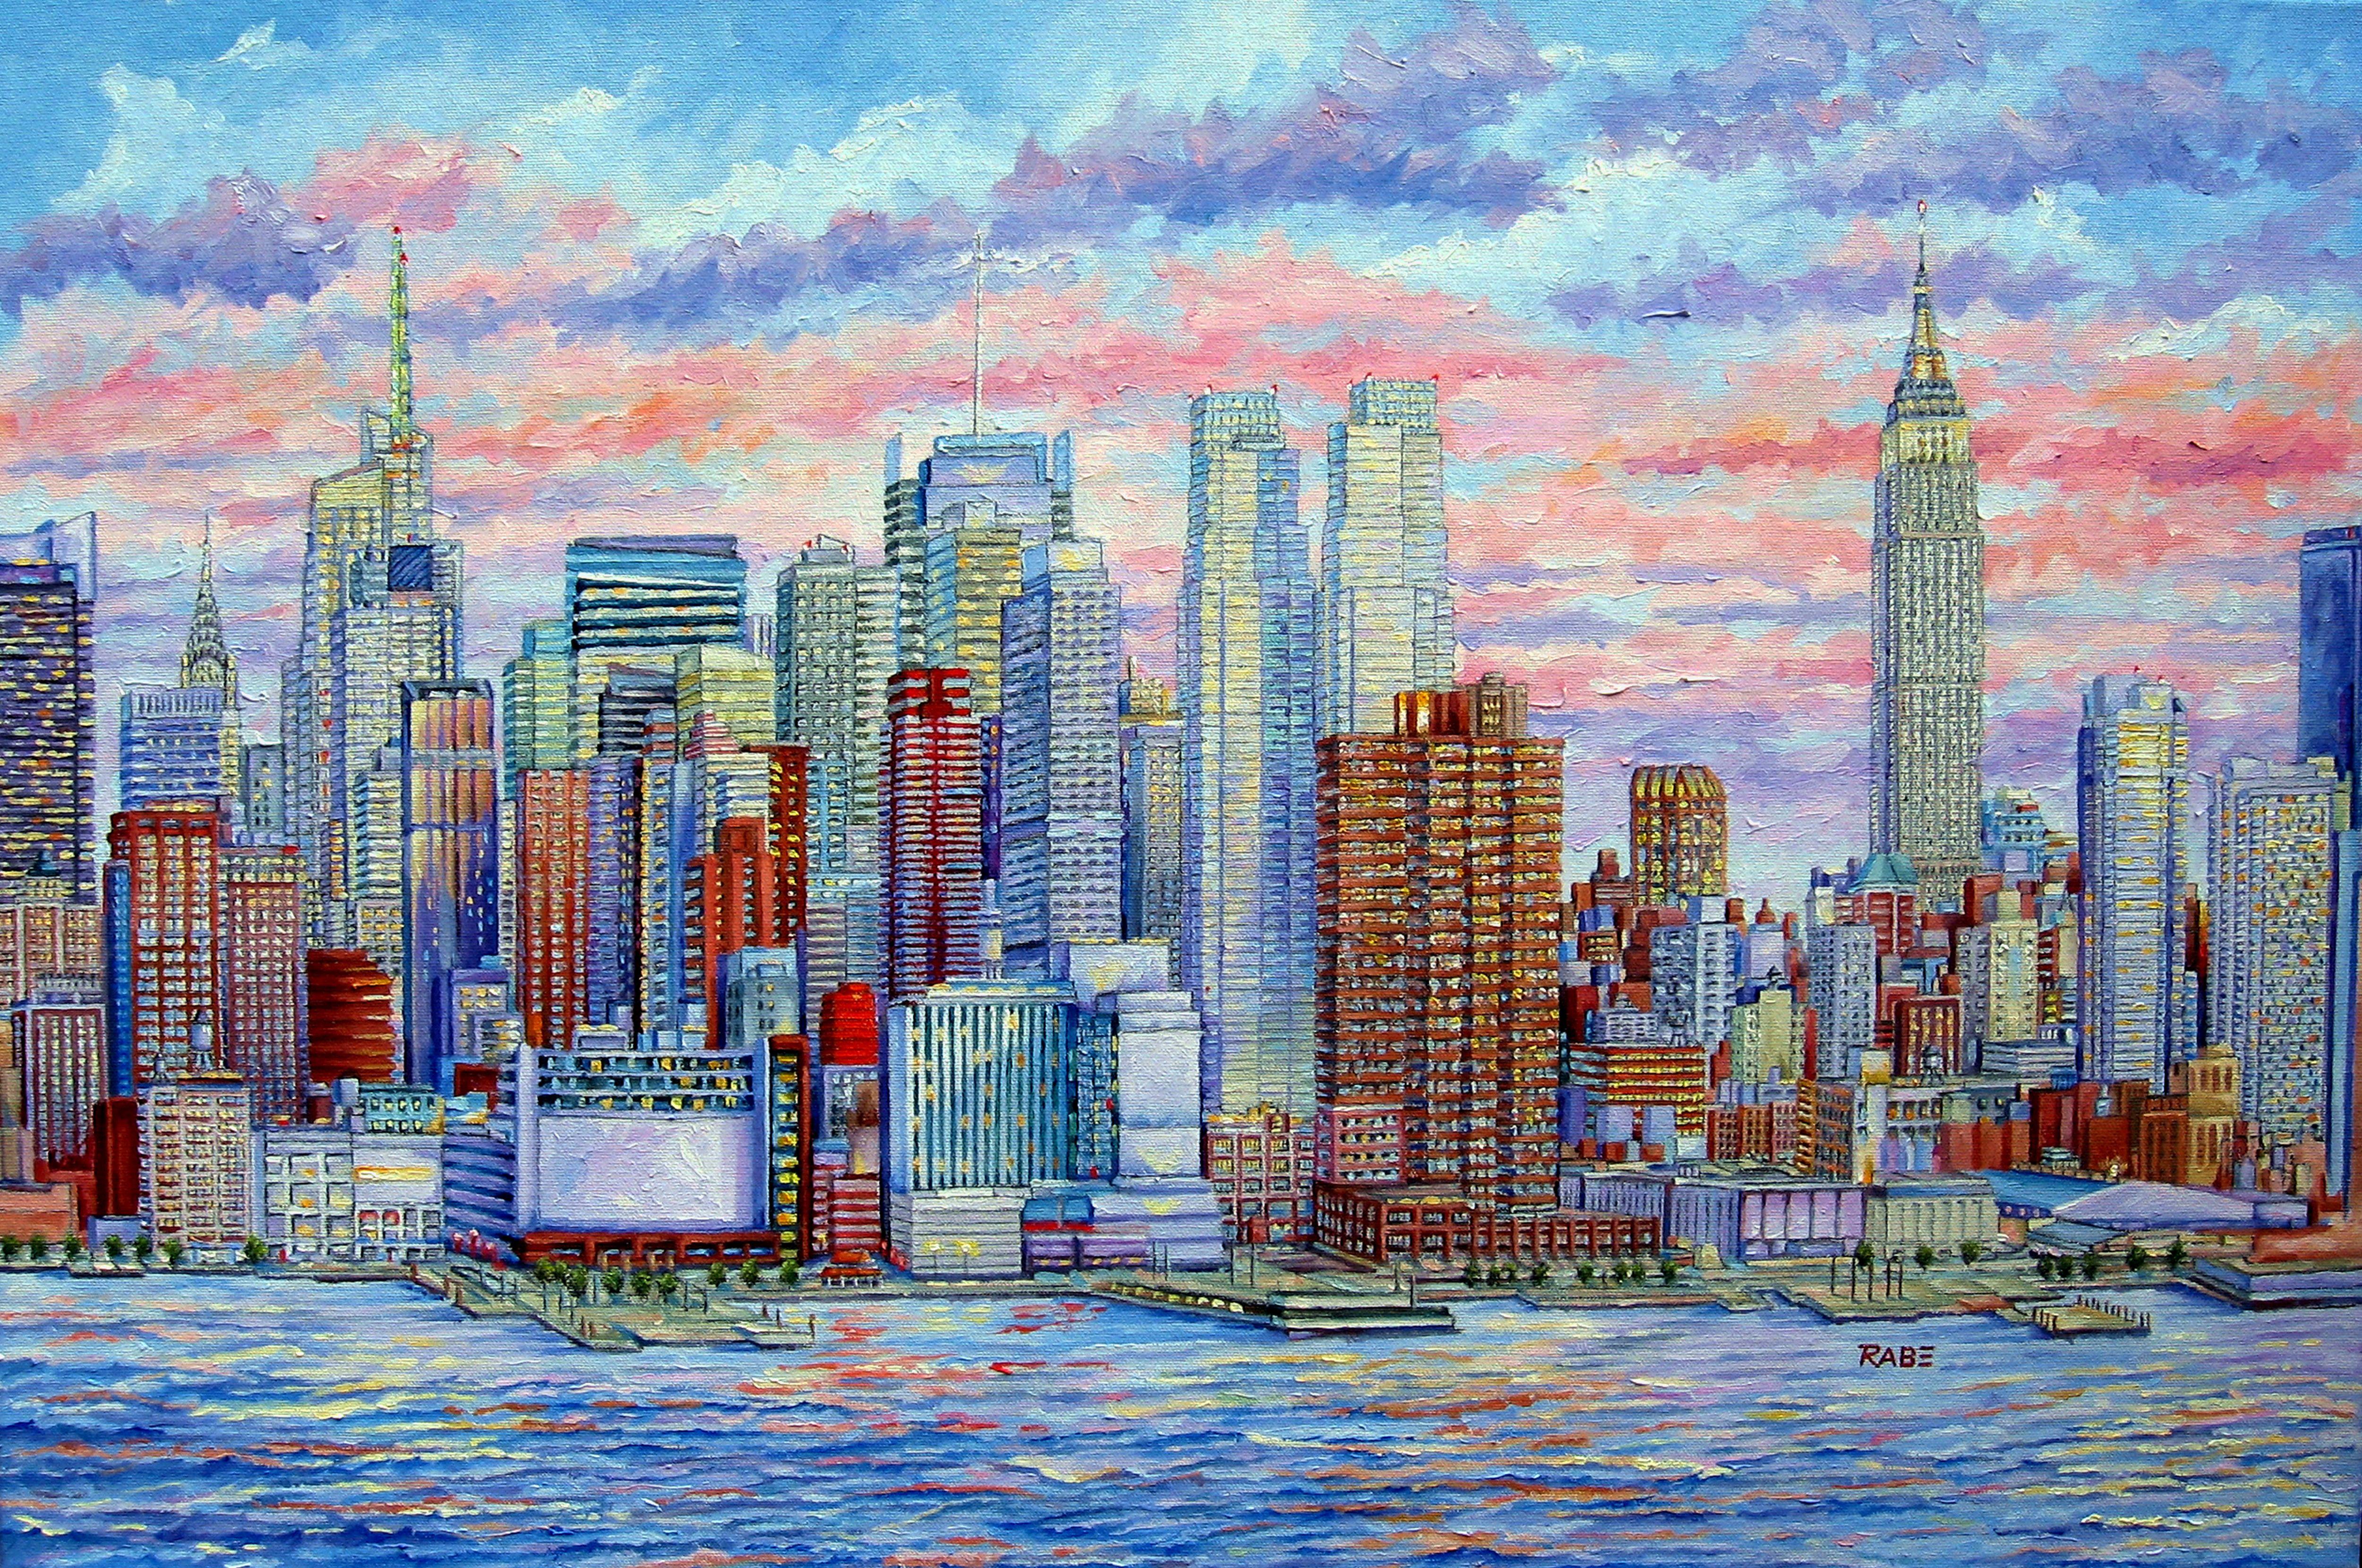 New York City - Manhattan Skyline Hudson River, peinture à l'huile sur toile - Painting de Mike Rabe